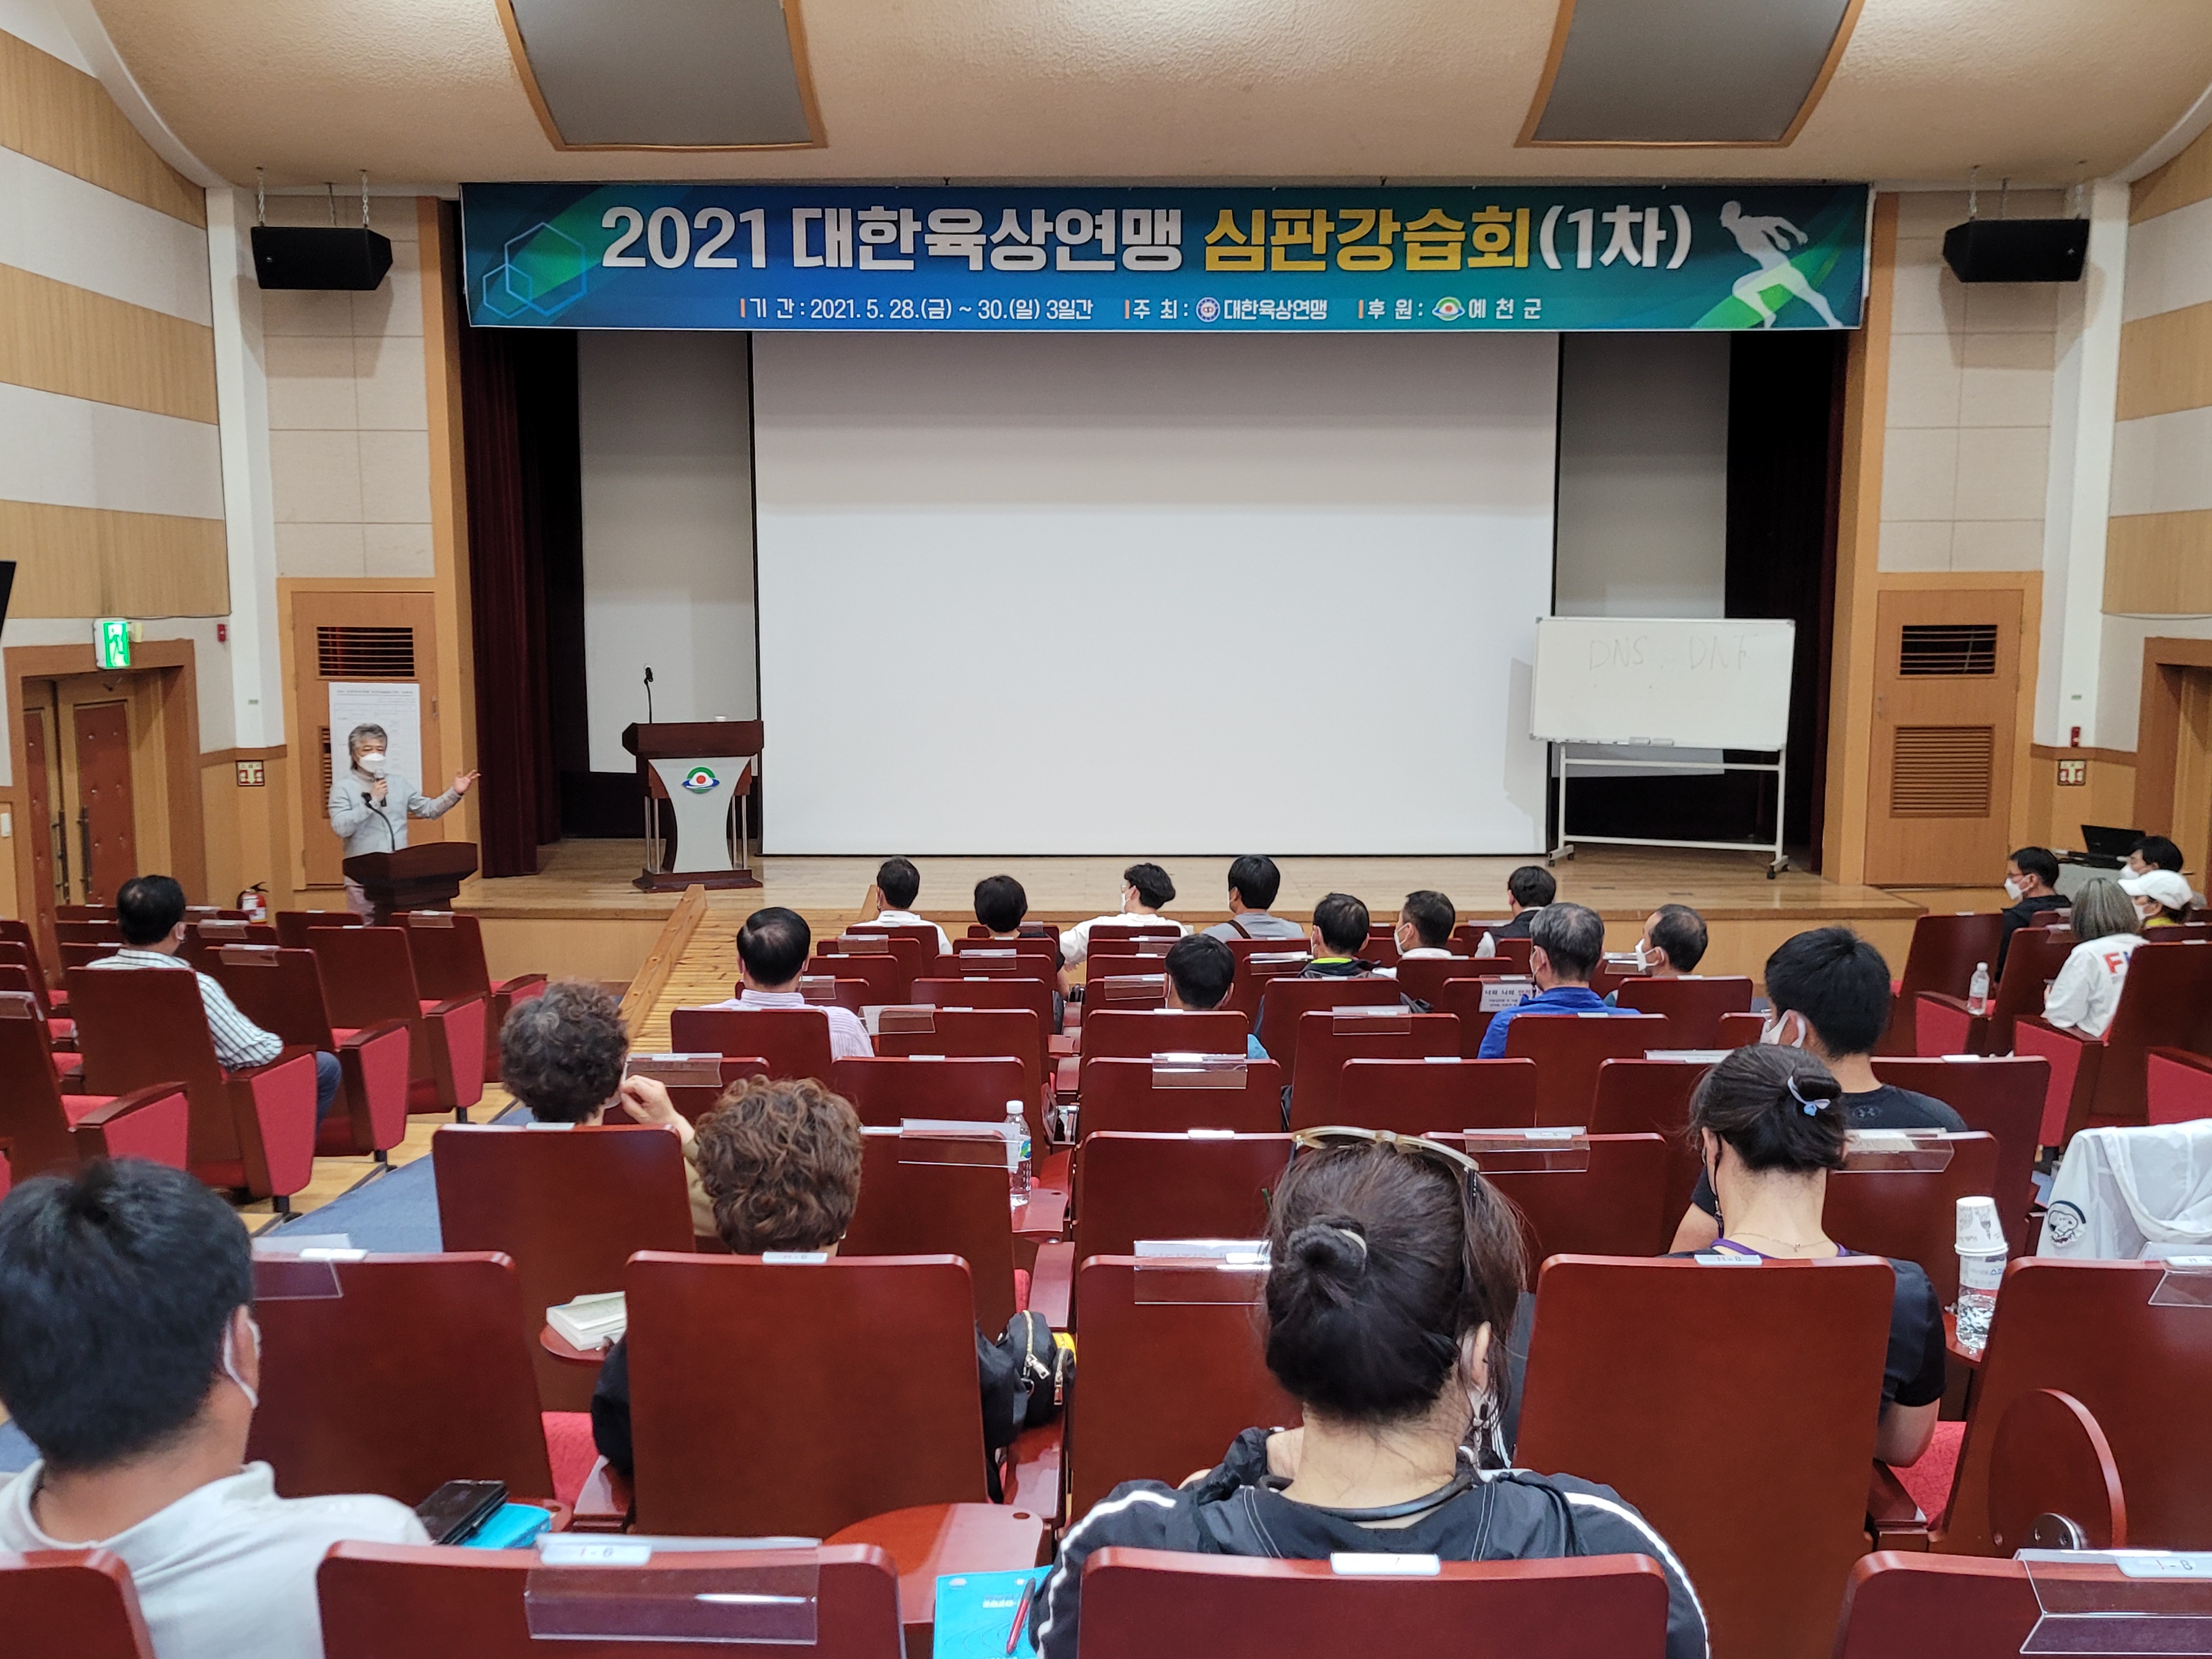 2021 대구육상심판 강습회 개최